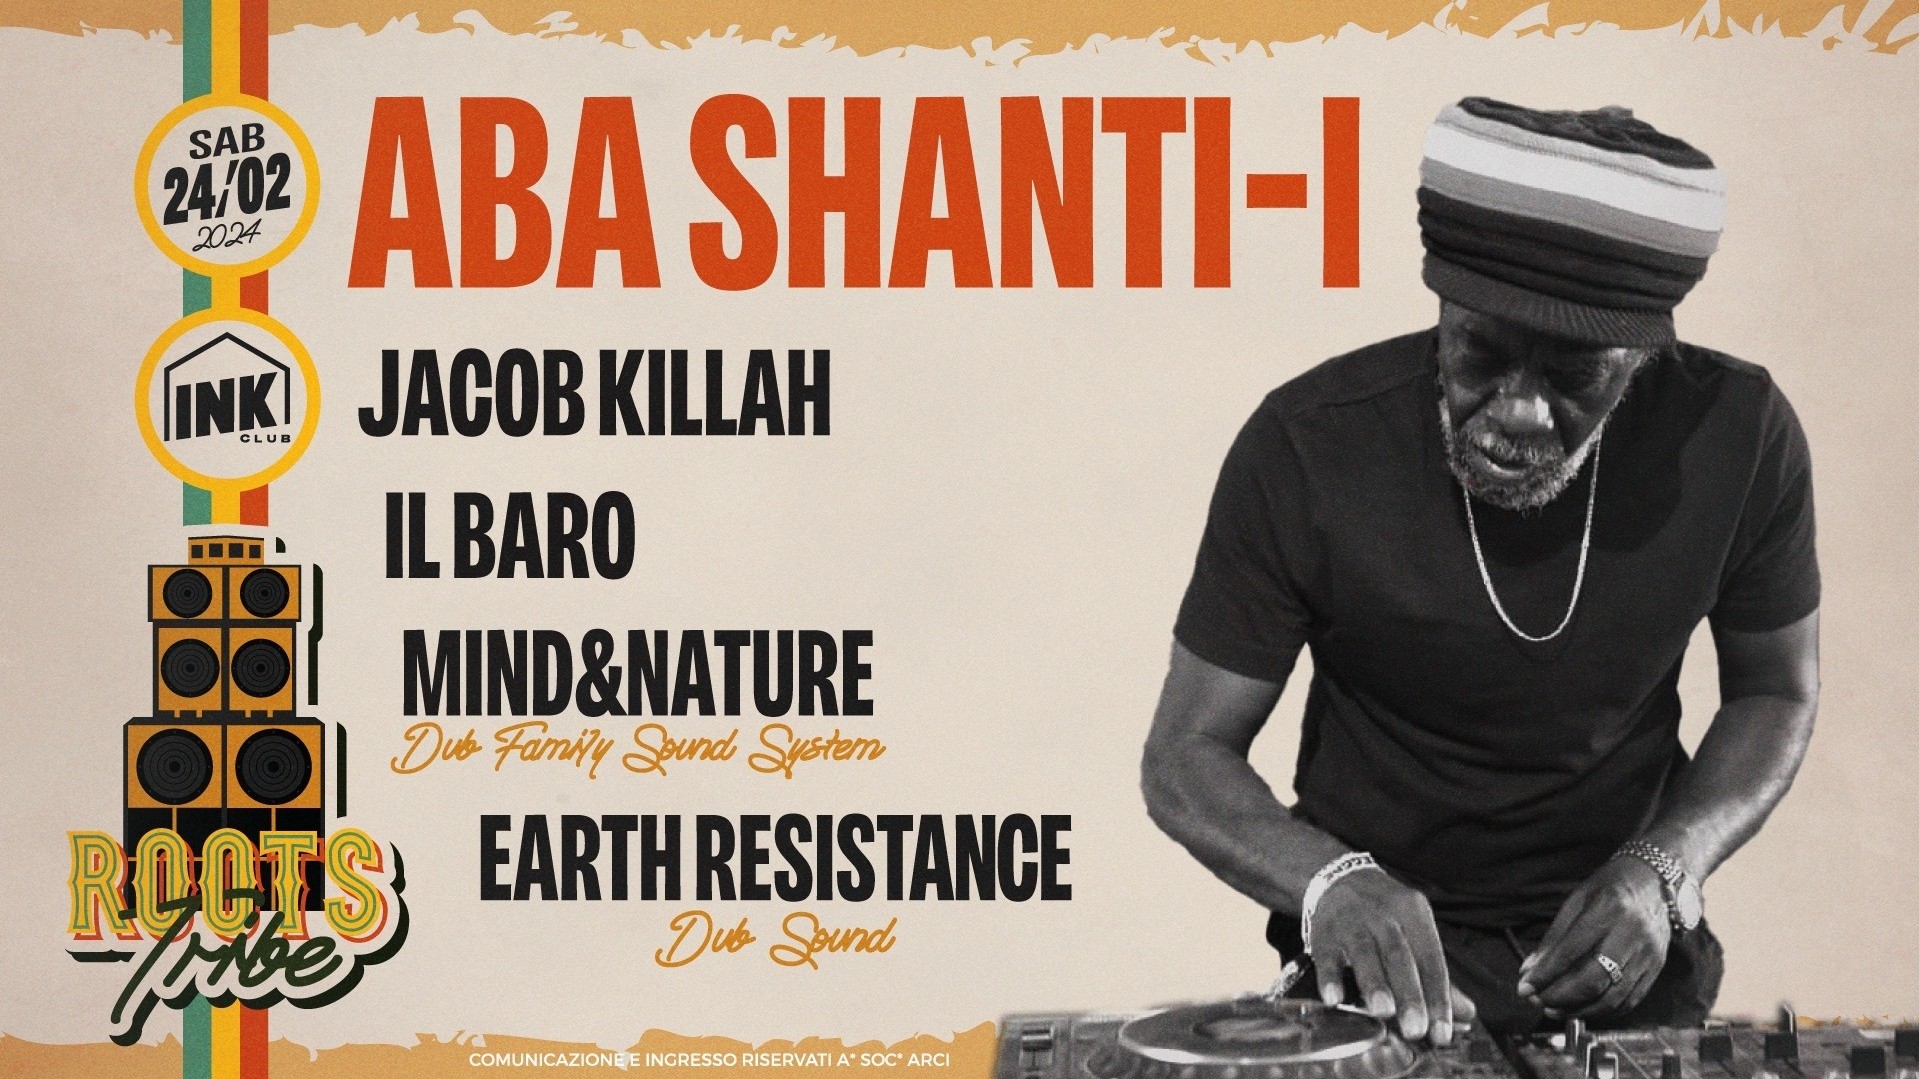 Roots Tribe - Aba Shanti-i (Uk) + Jacob Killah, Il Baro, Mind&nature & Earth Resistance